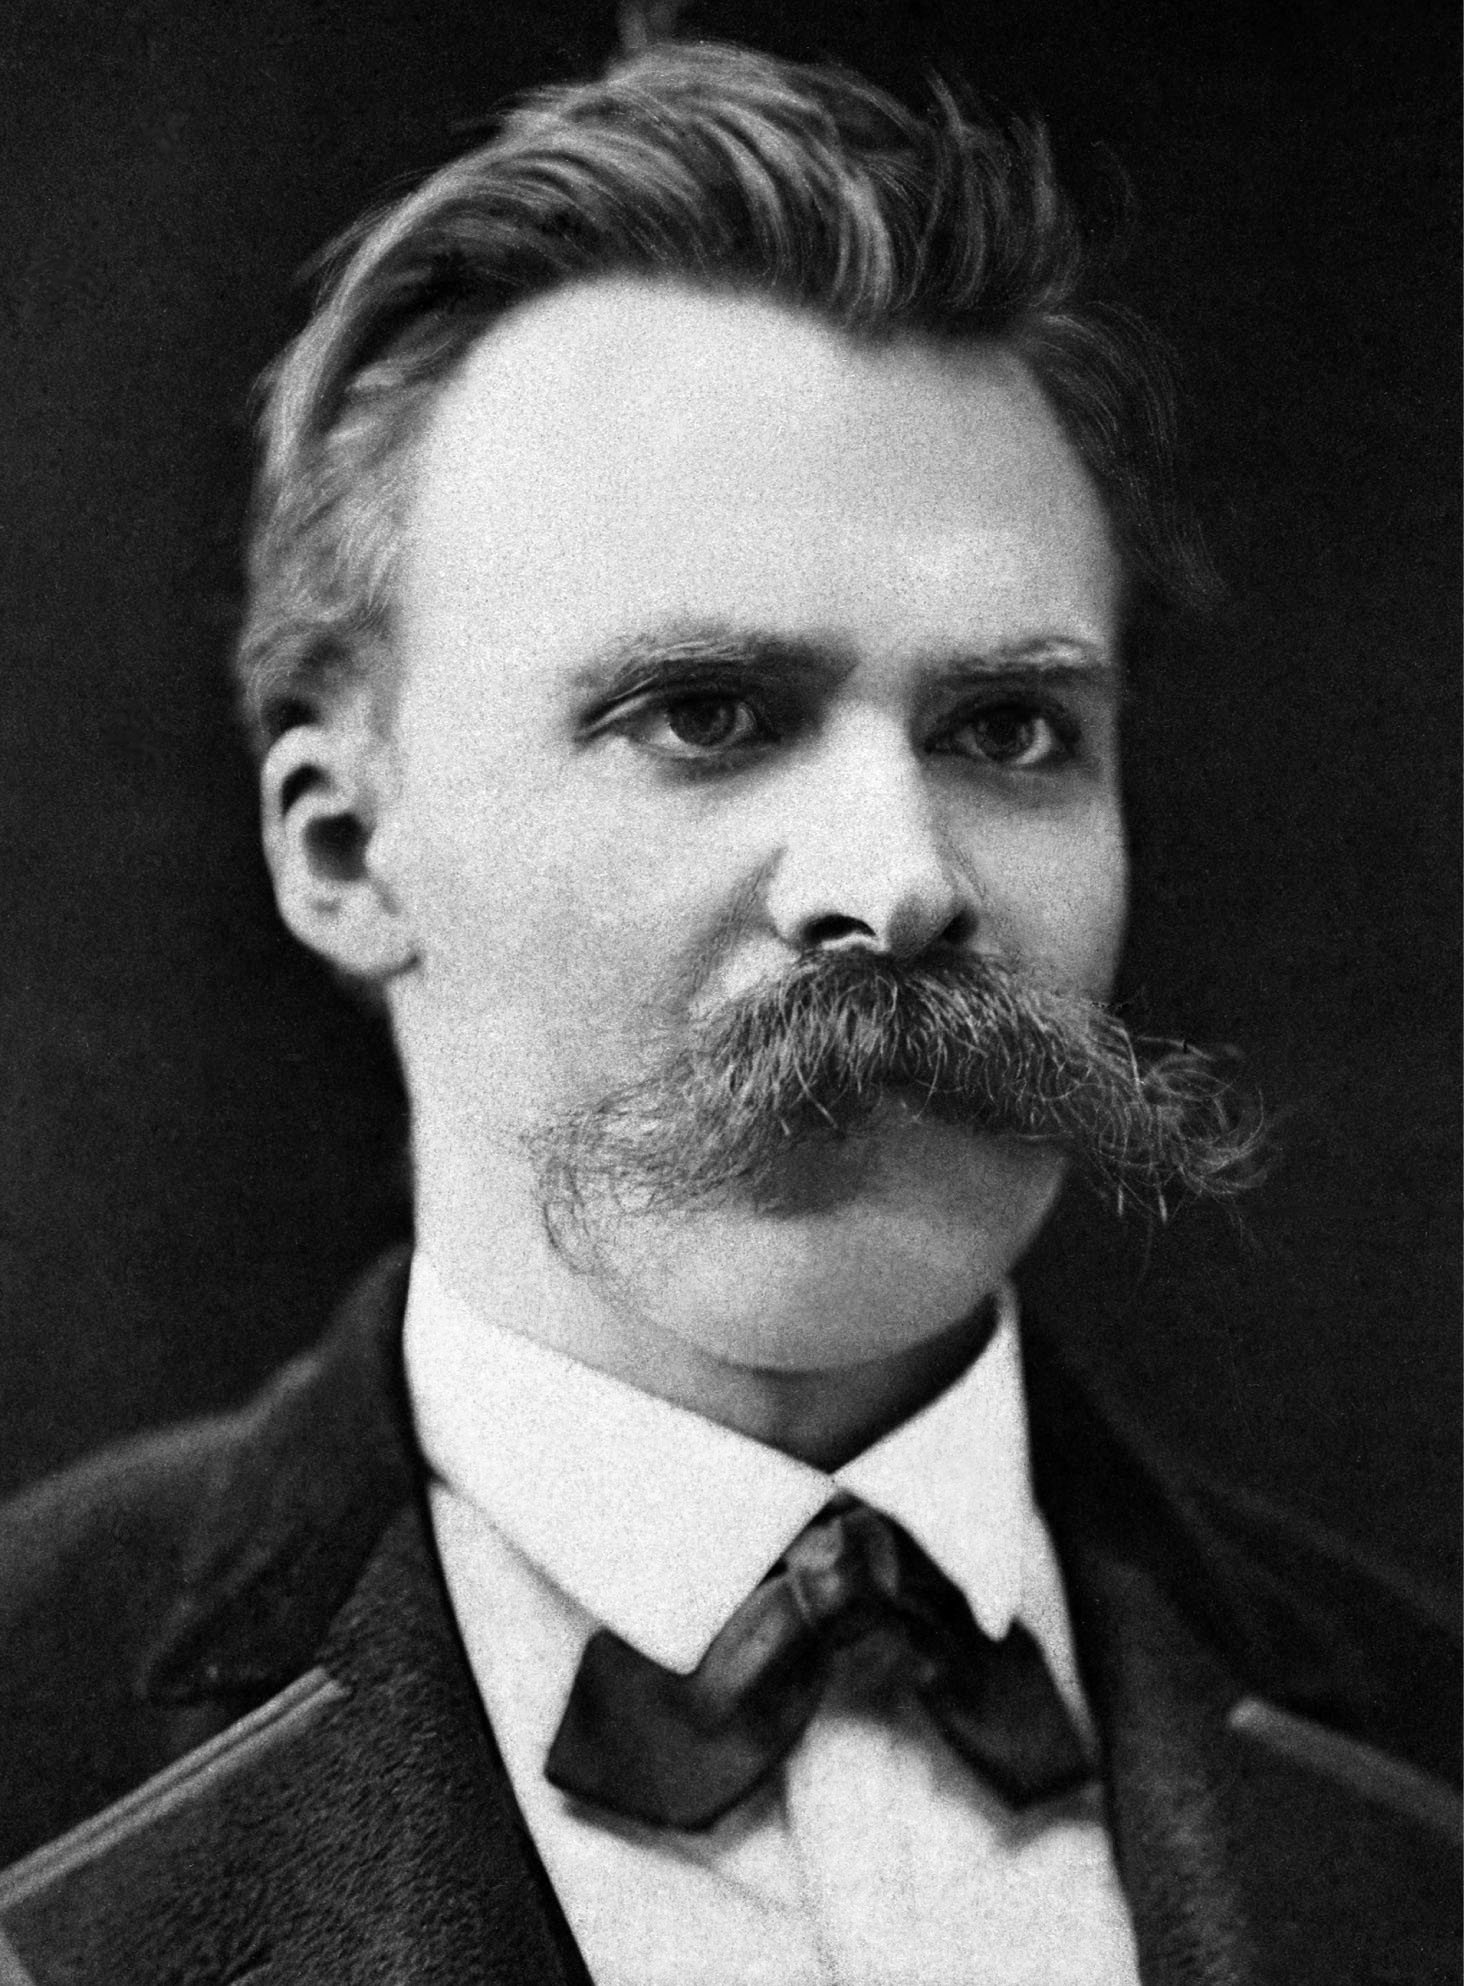 An image of Friedrich Nietzsche